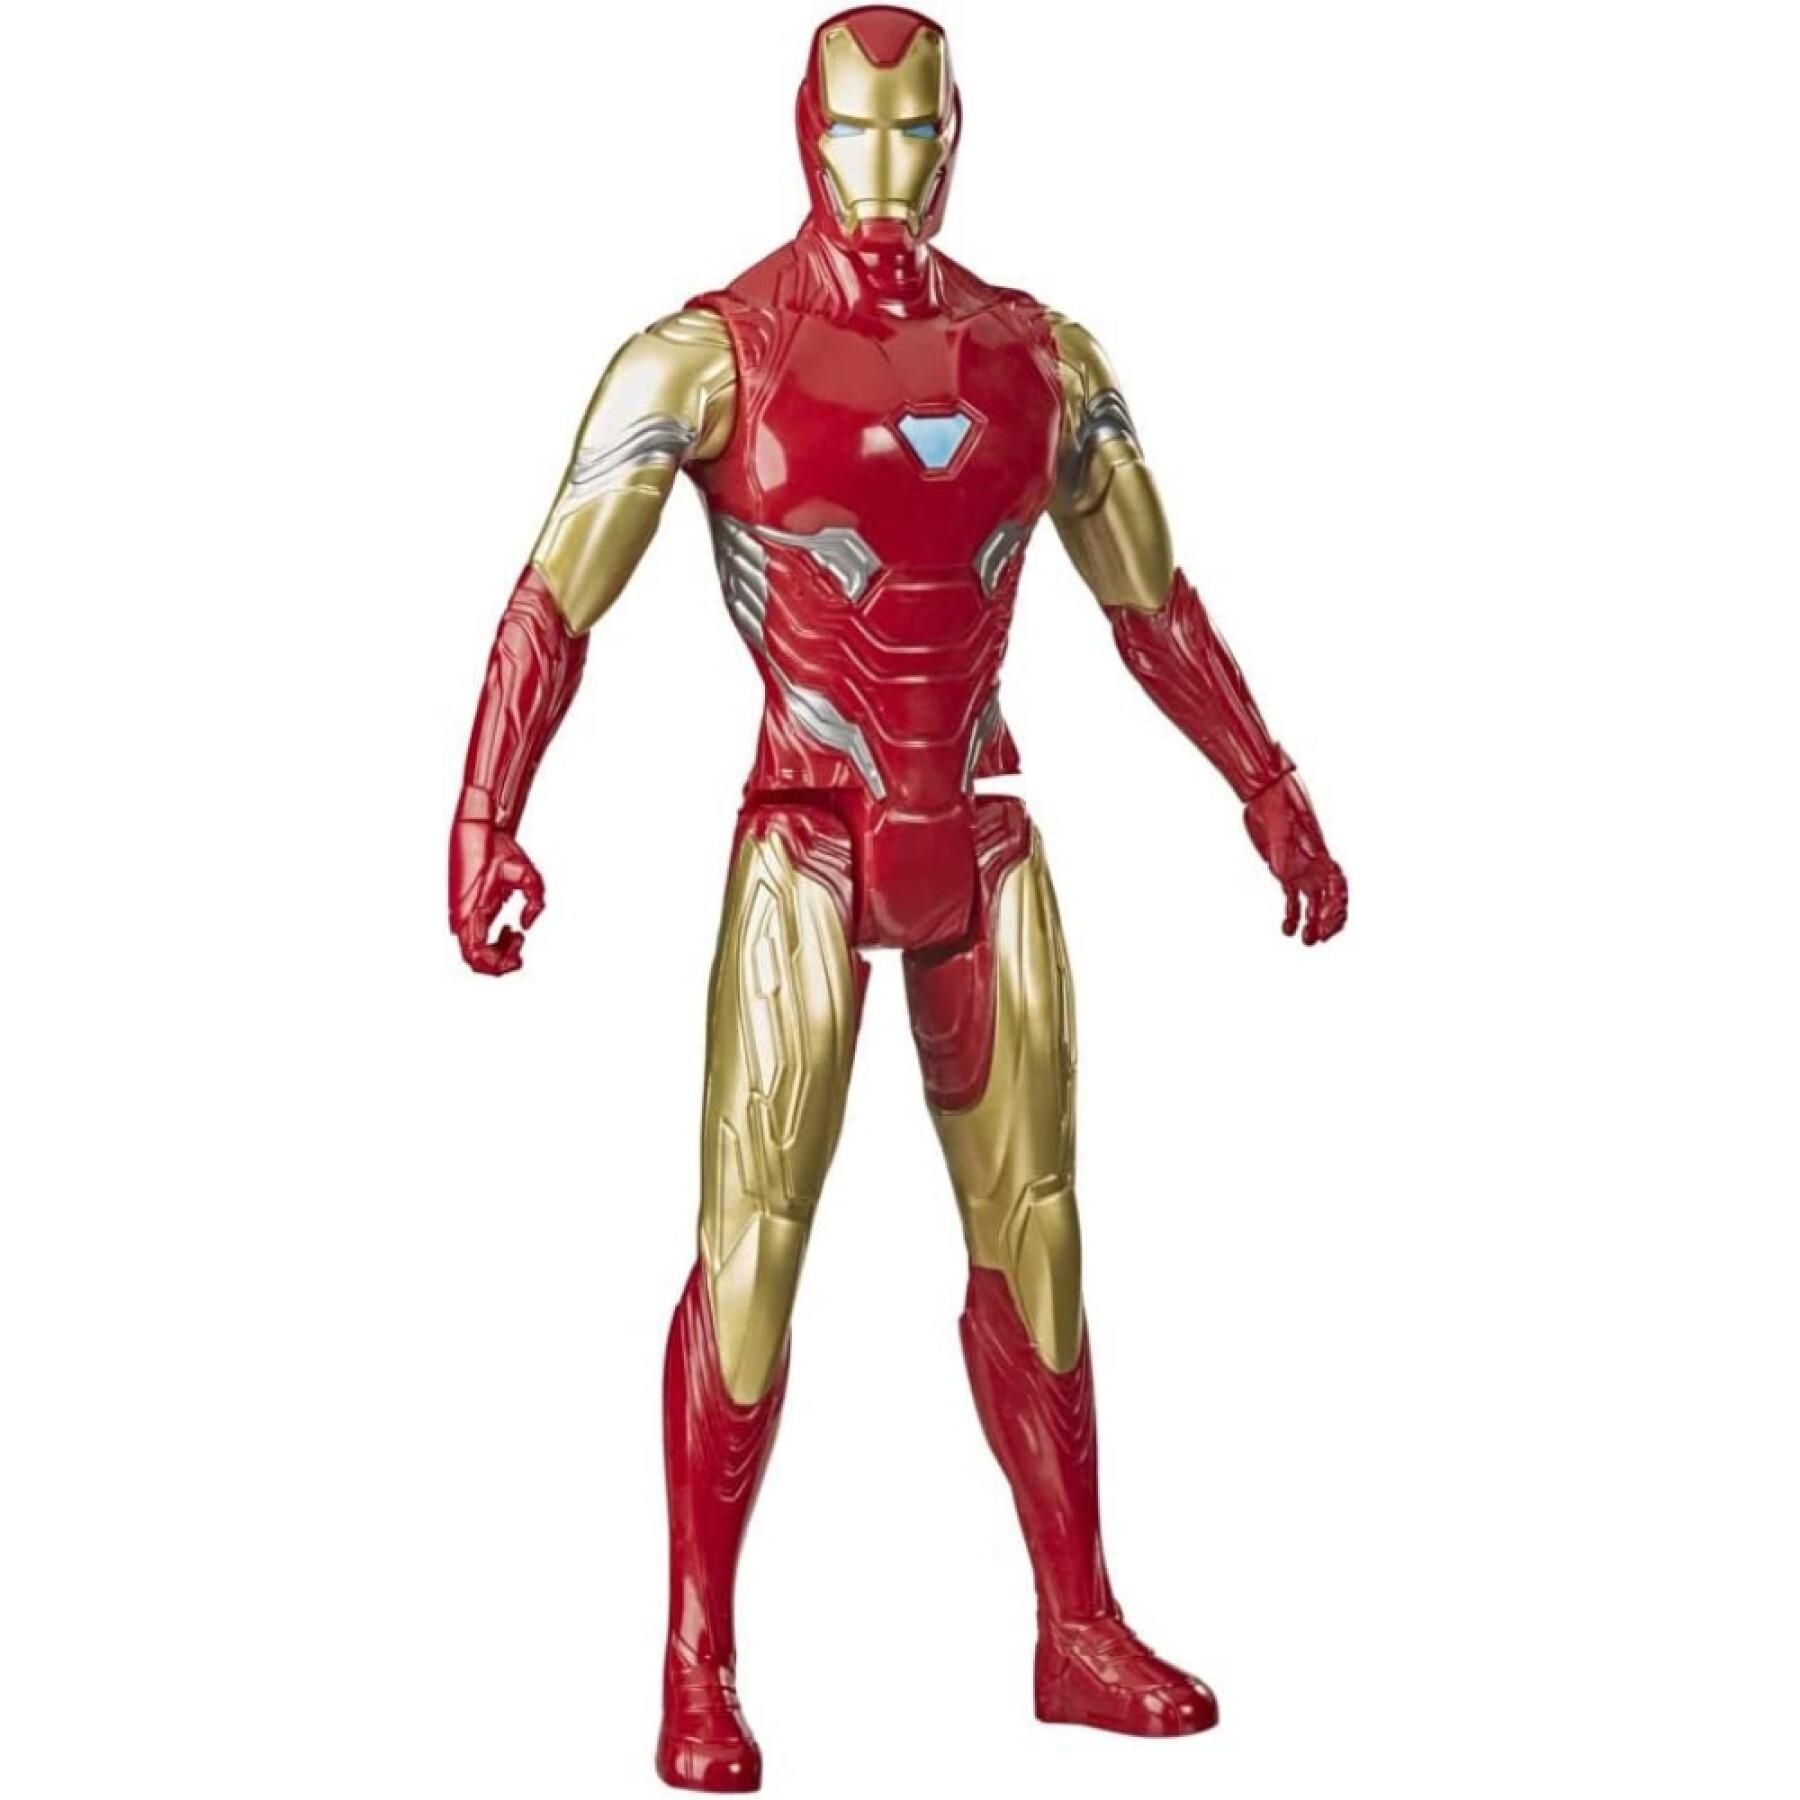 Figurita Marvel Avengers Titán Iron Man